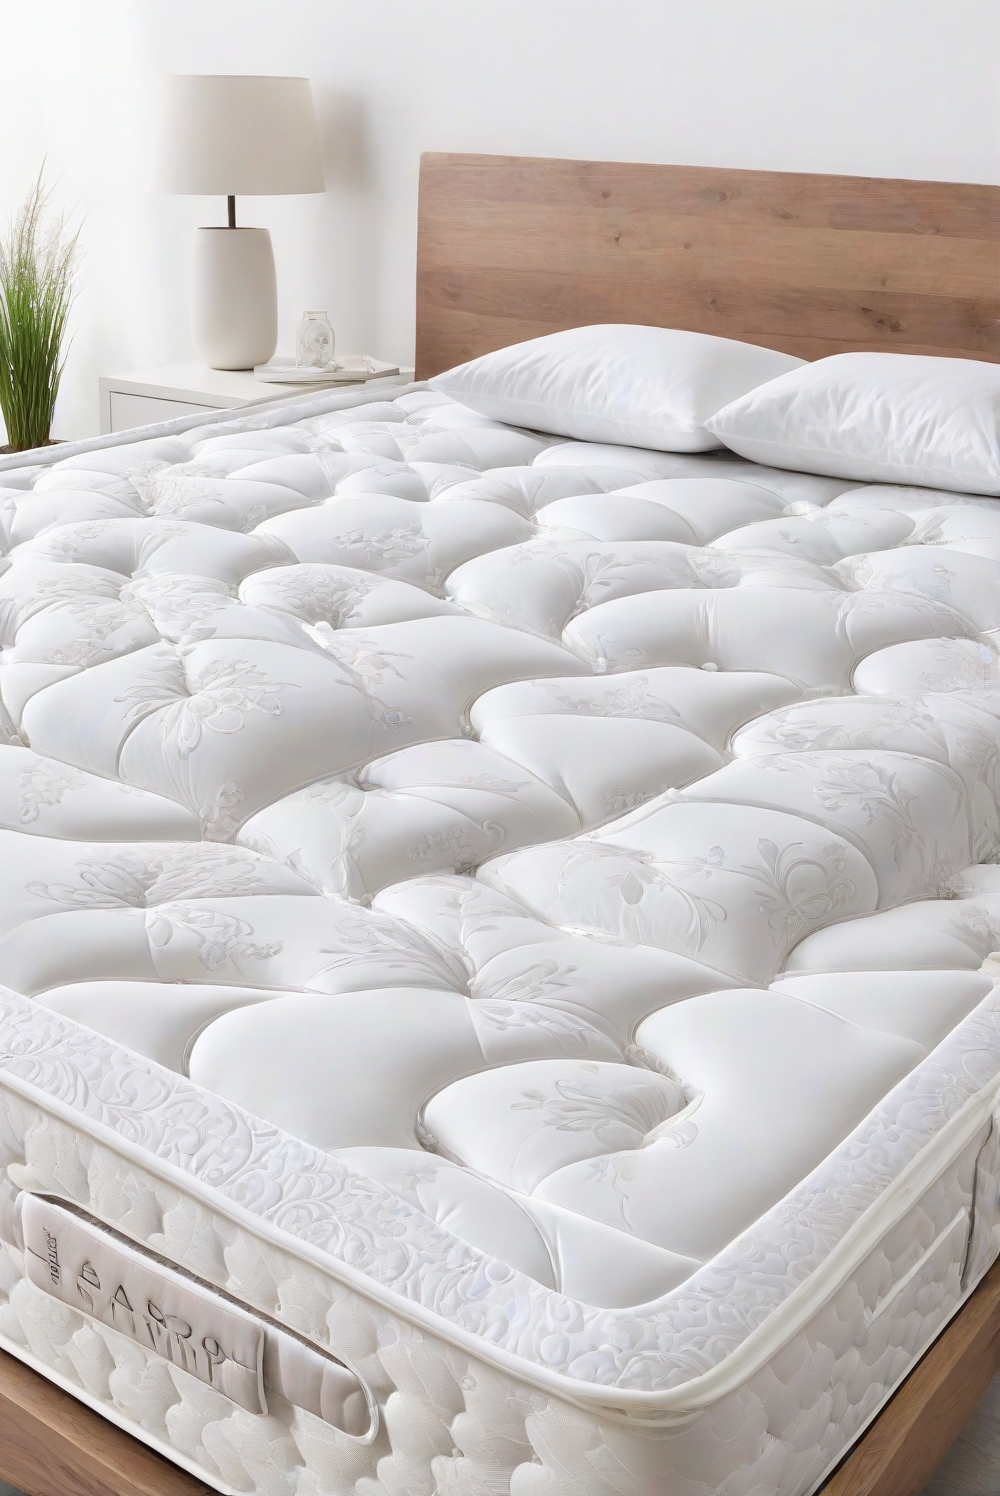 mattress buying guide, comfortable bedding, sleep quality, mattress materials, supportive mattress, mattress firmness, mattress size